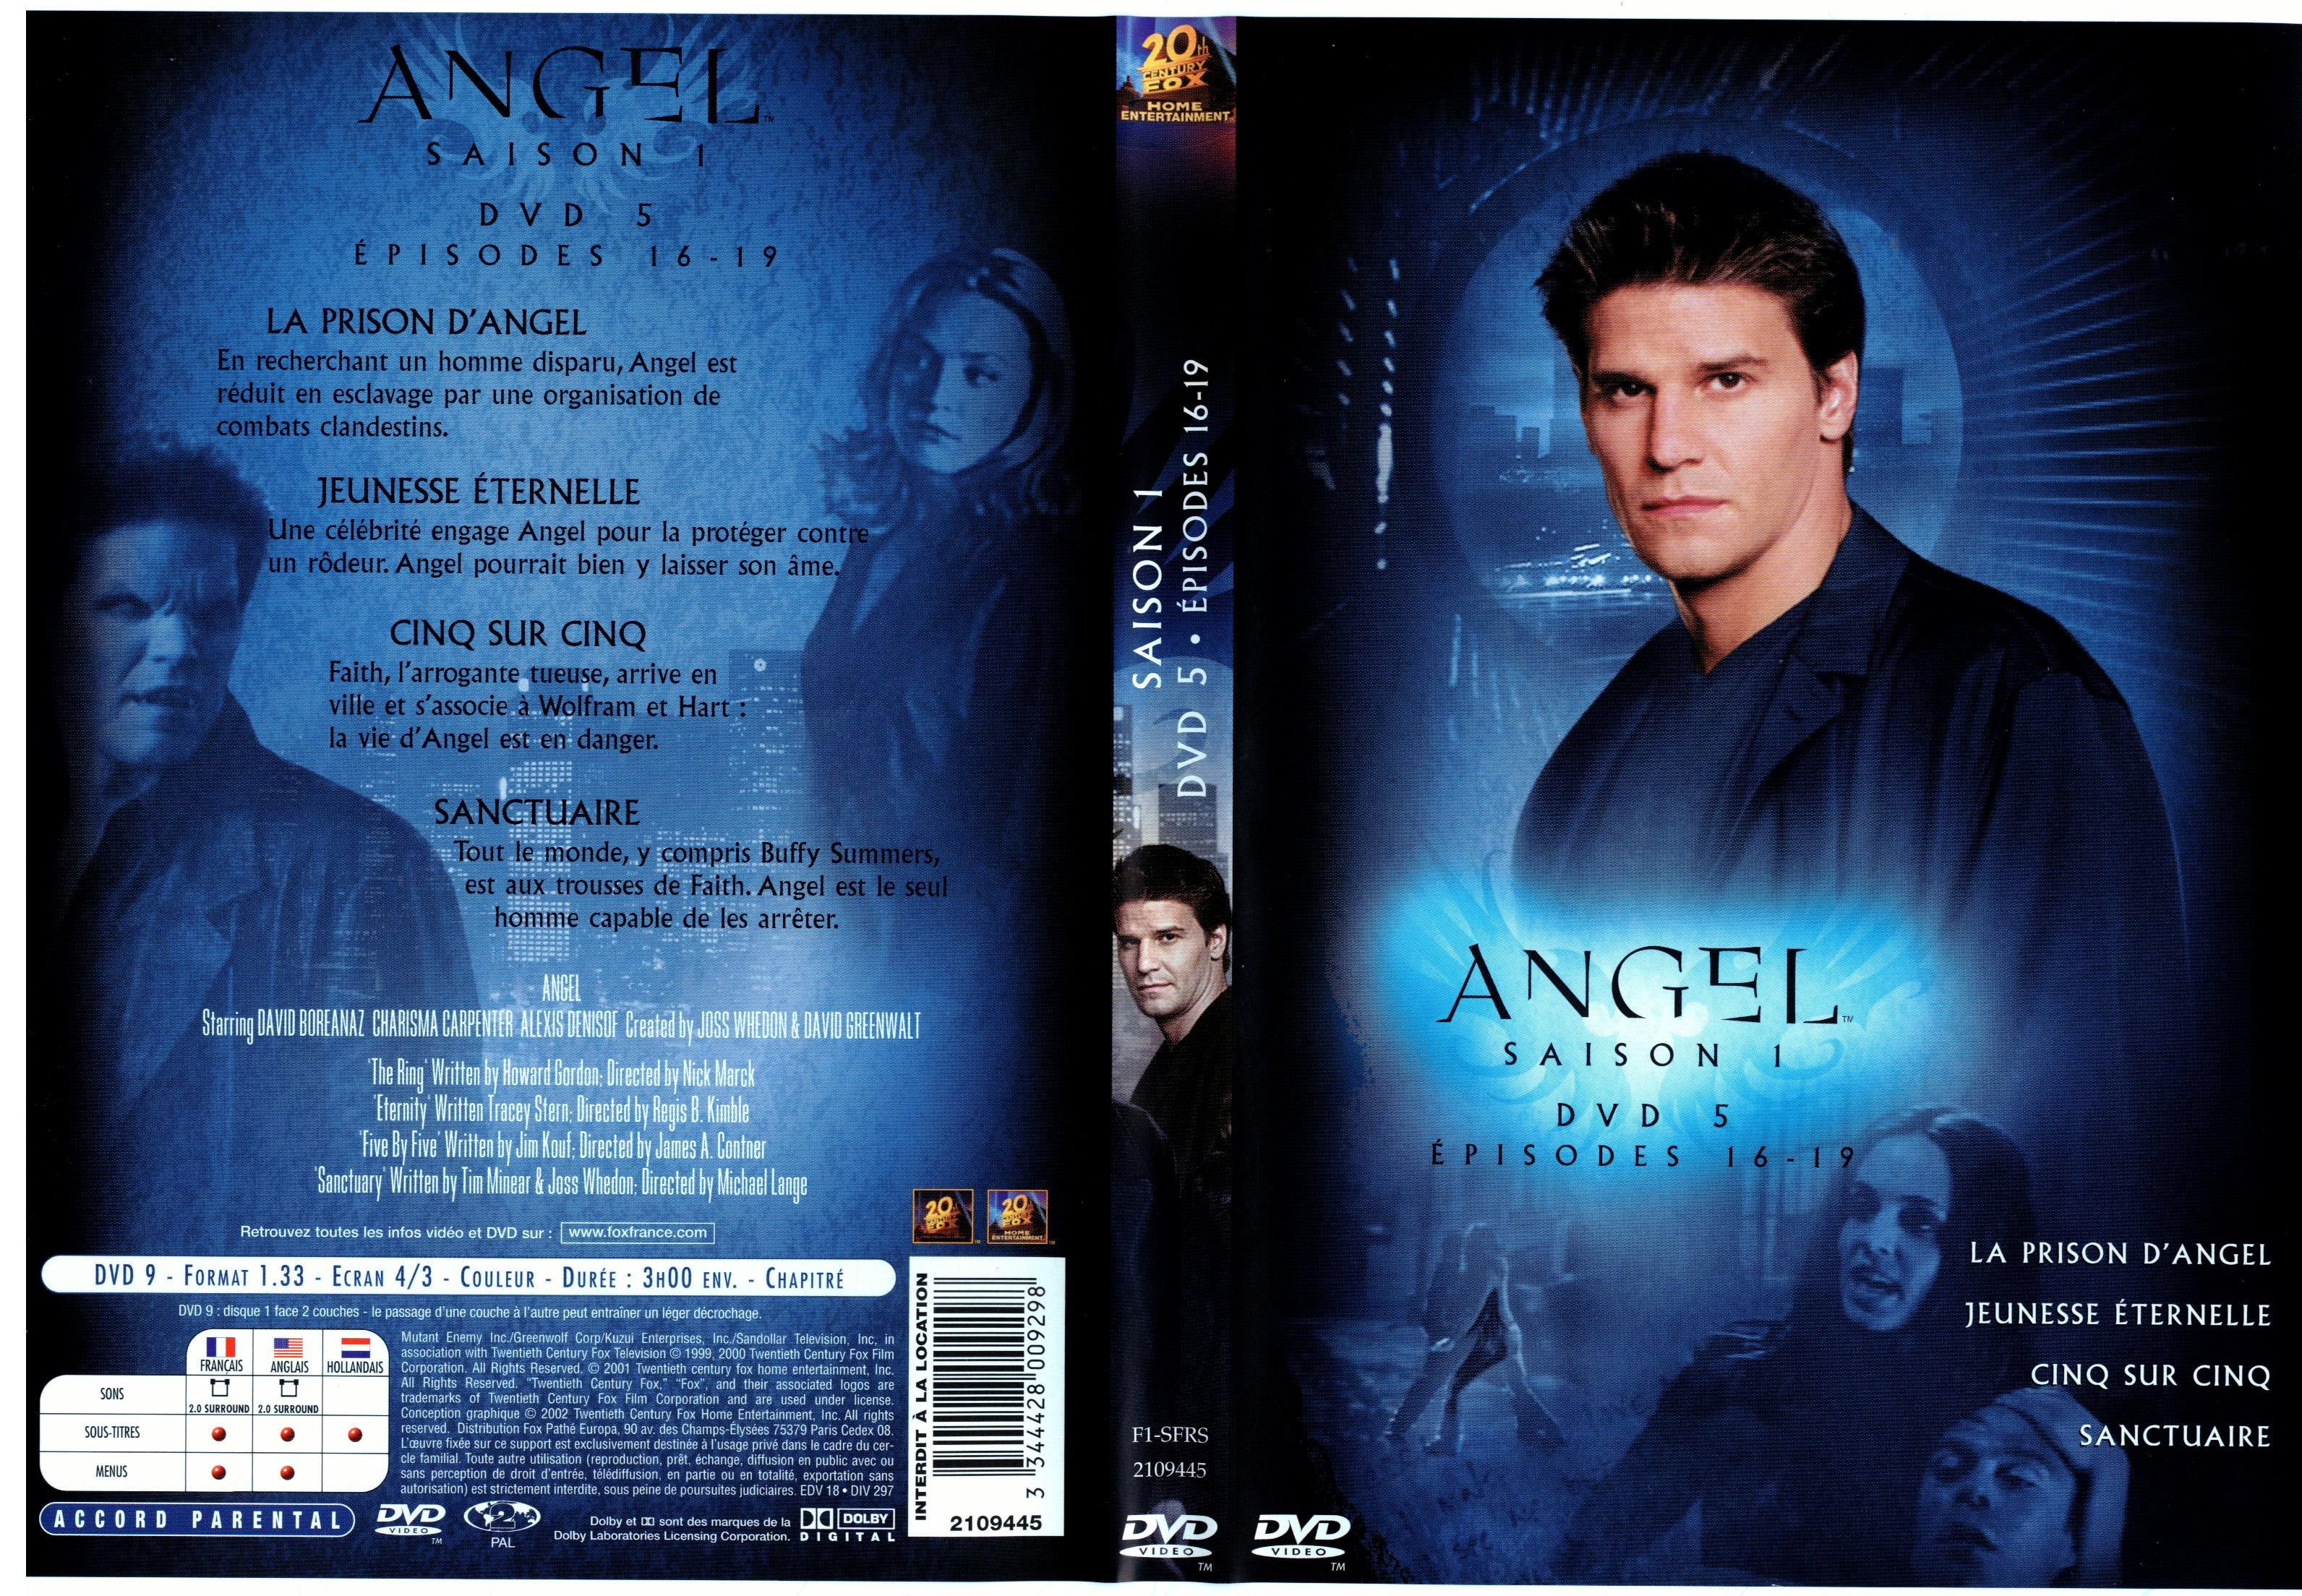 Jaquette DVD Angel Saison 1 dvd 5